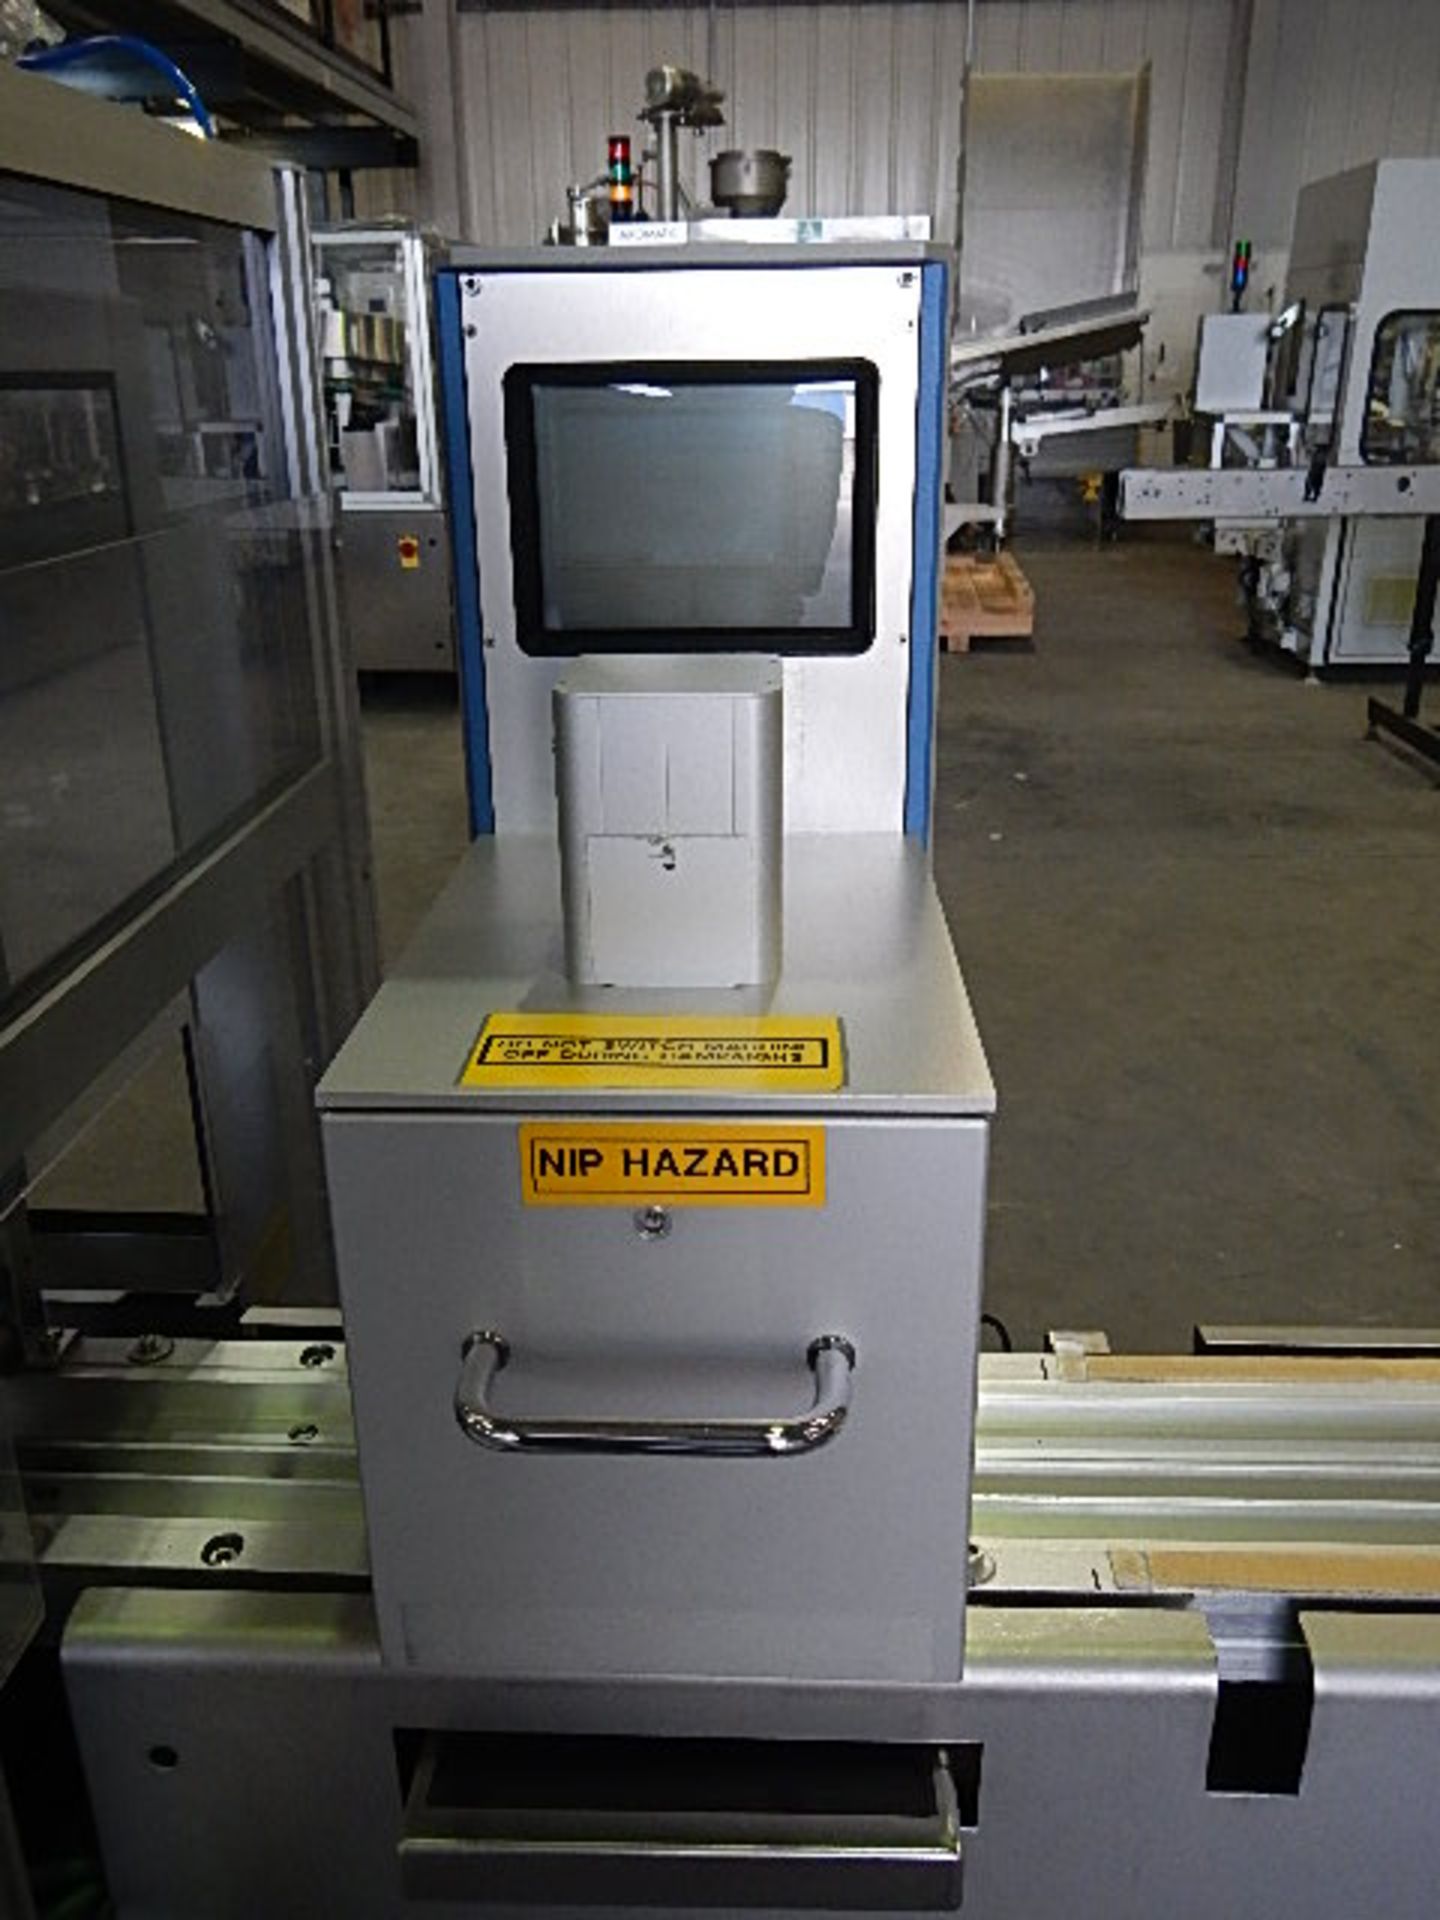 Klockner model EAS 1001 Unit-Dose blister packaging machine designed for pharmaceutical and - Image 18 of 25